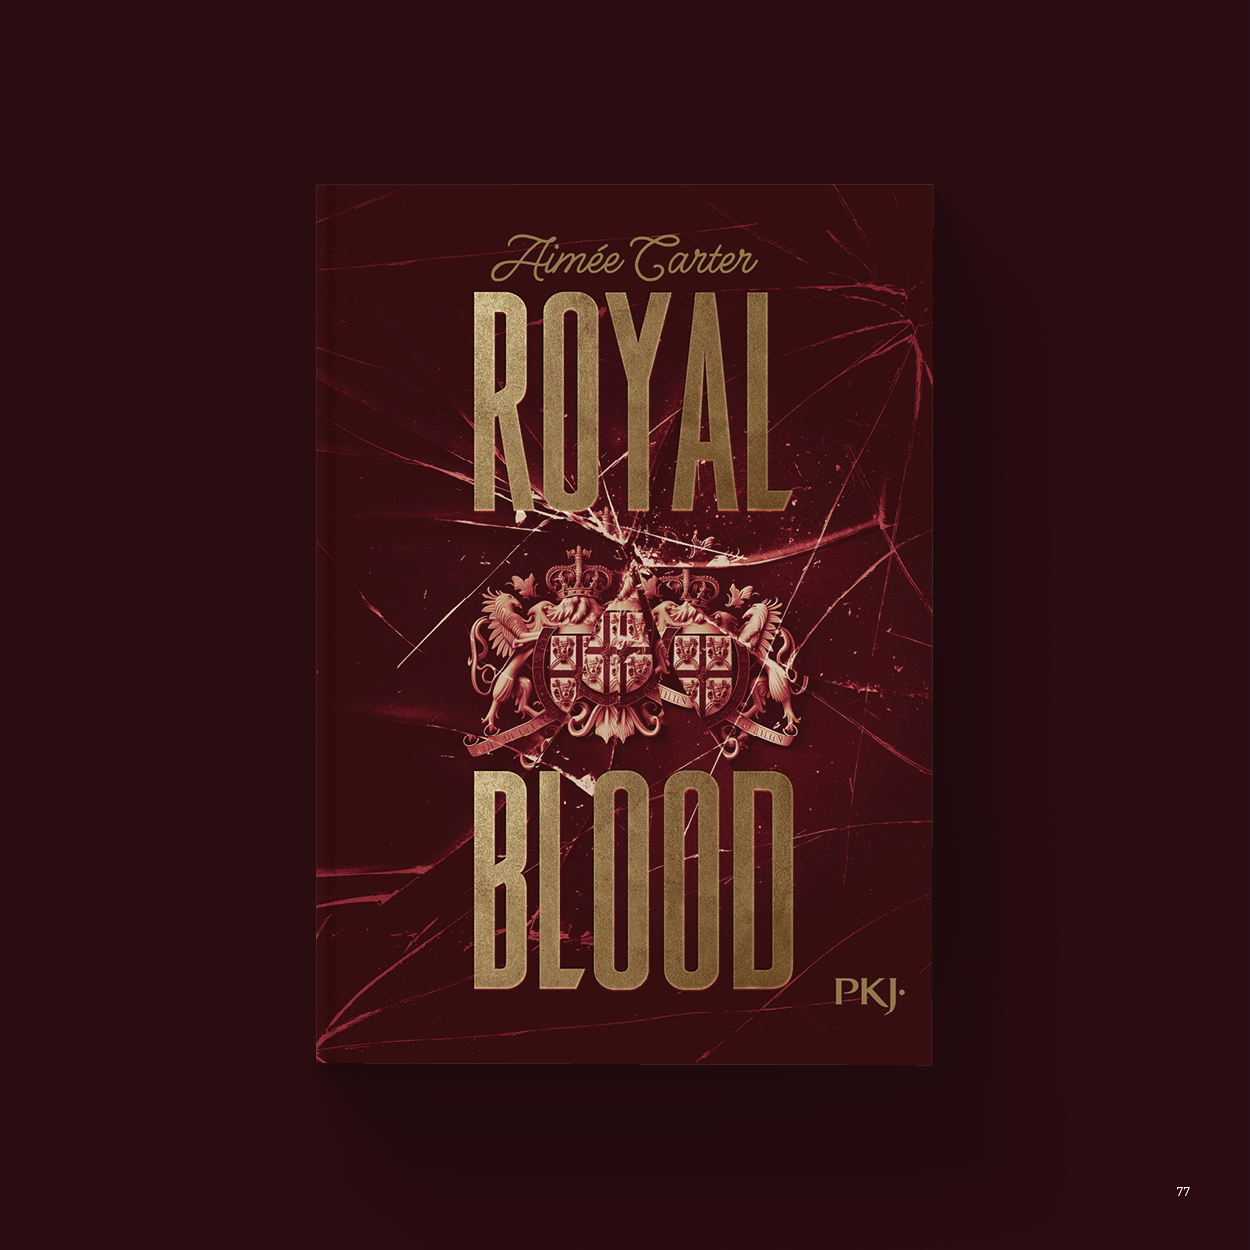 Vue_Royal_blood_77